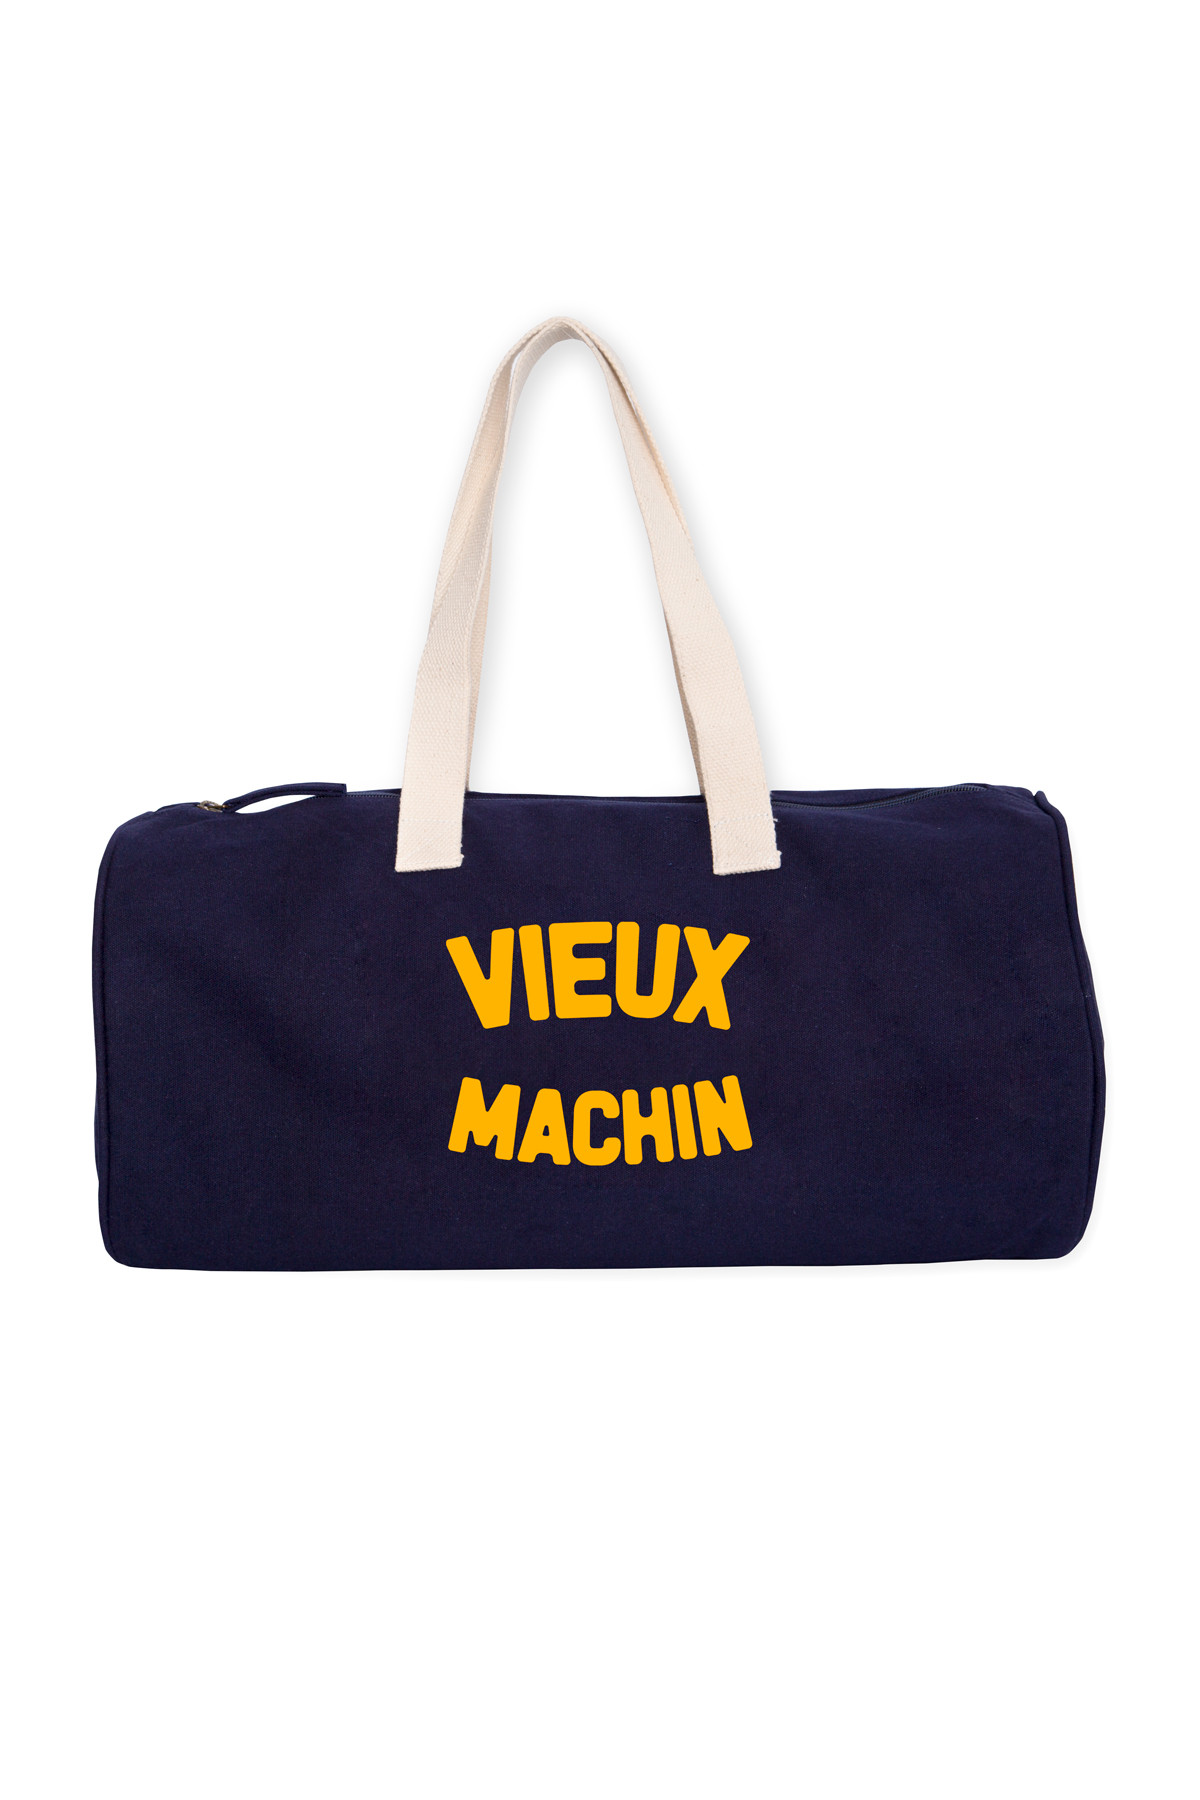 Photo de SACS Duffle Bag VIEUX MACHIN chez French Disorder